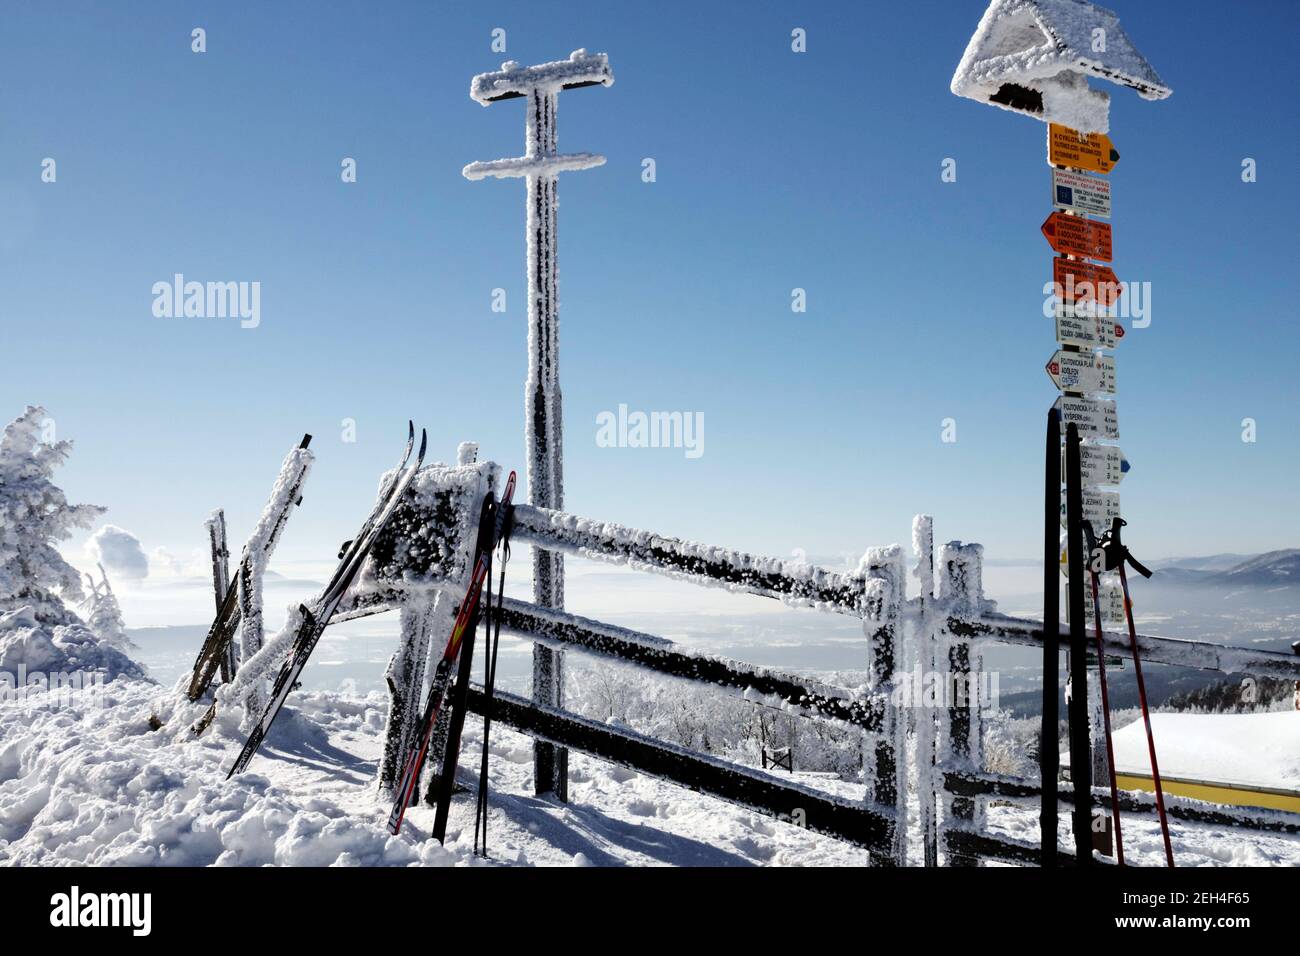 Pista de esquí en la señal turística, día soleado de invierno Foto de stock